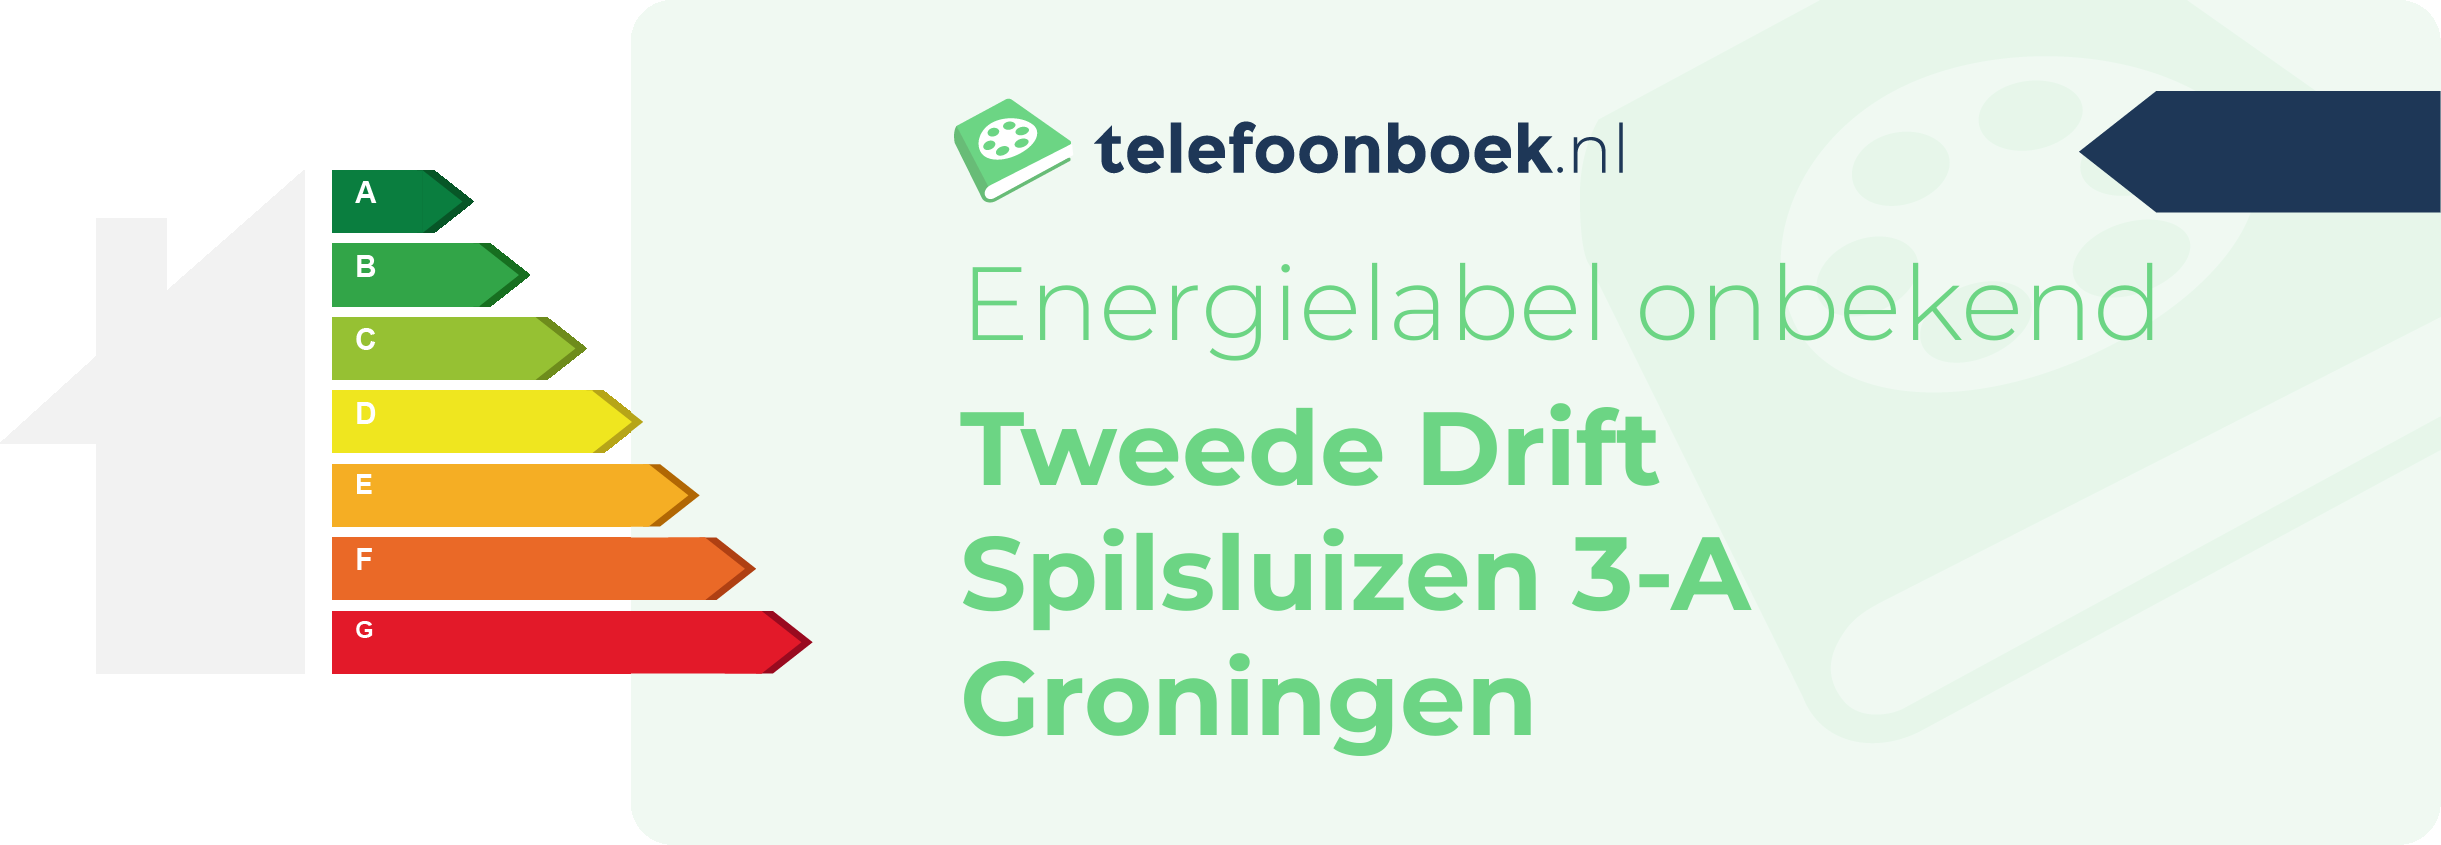 Energielabel Tweede Drift Spilsluizen 3-A Groningen